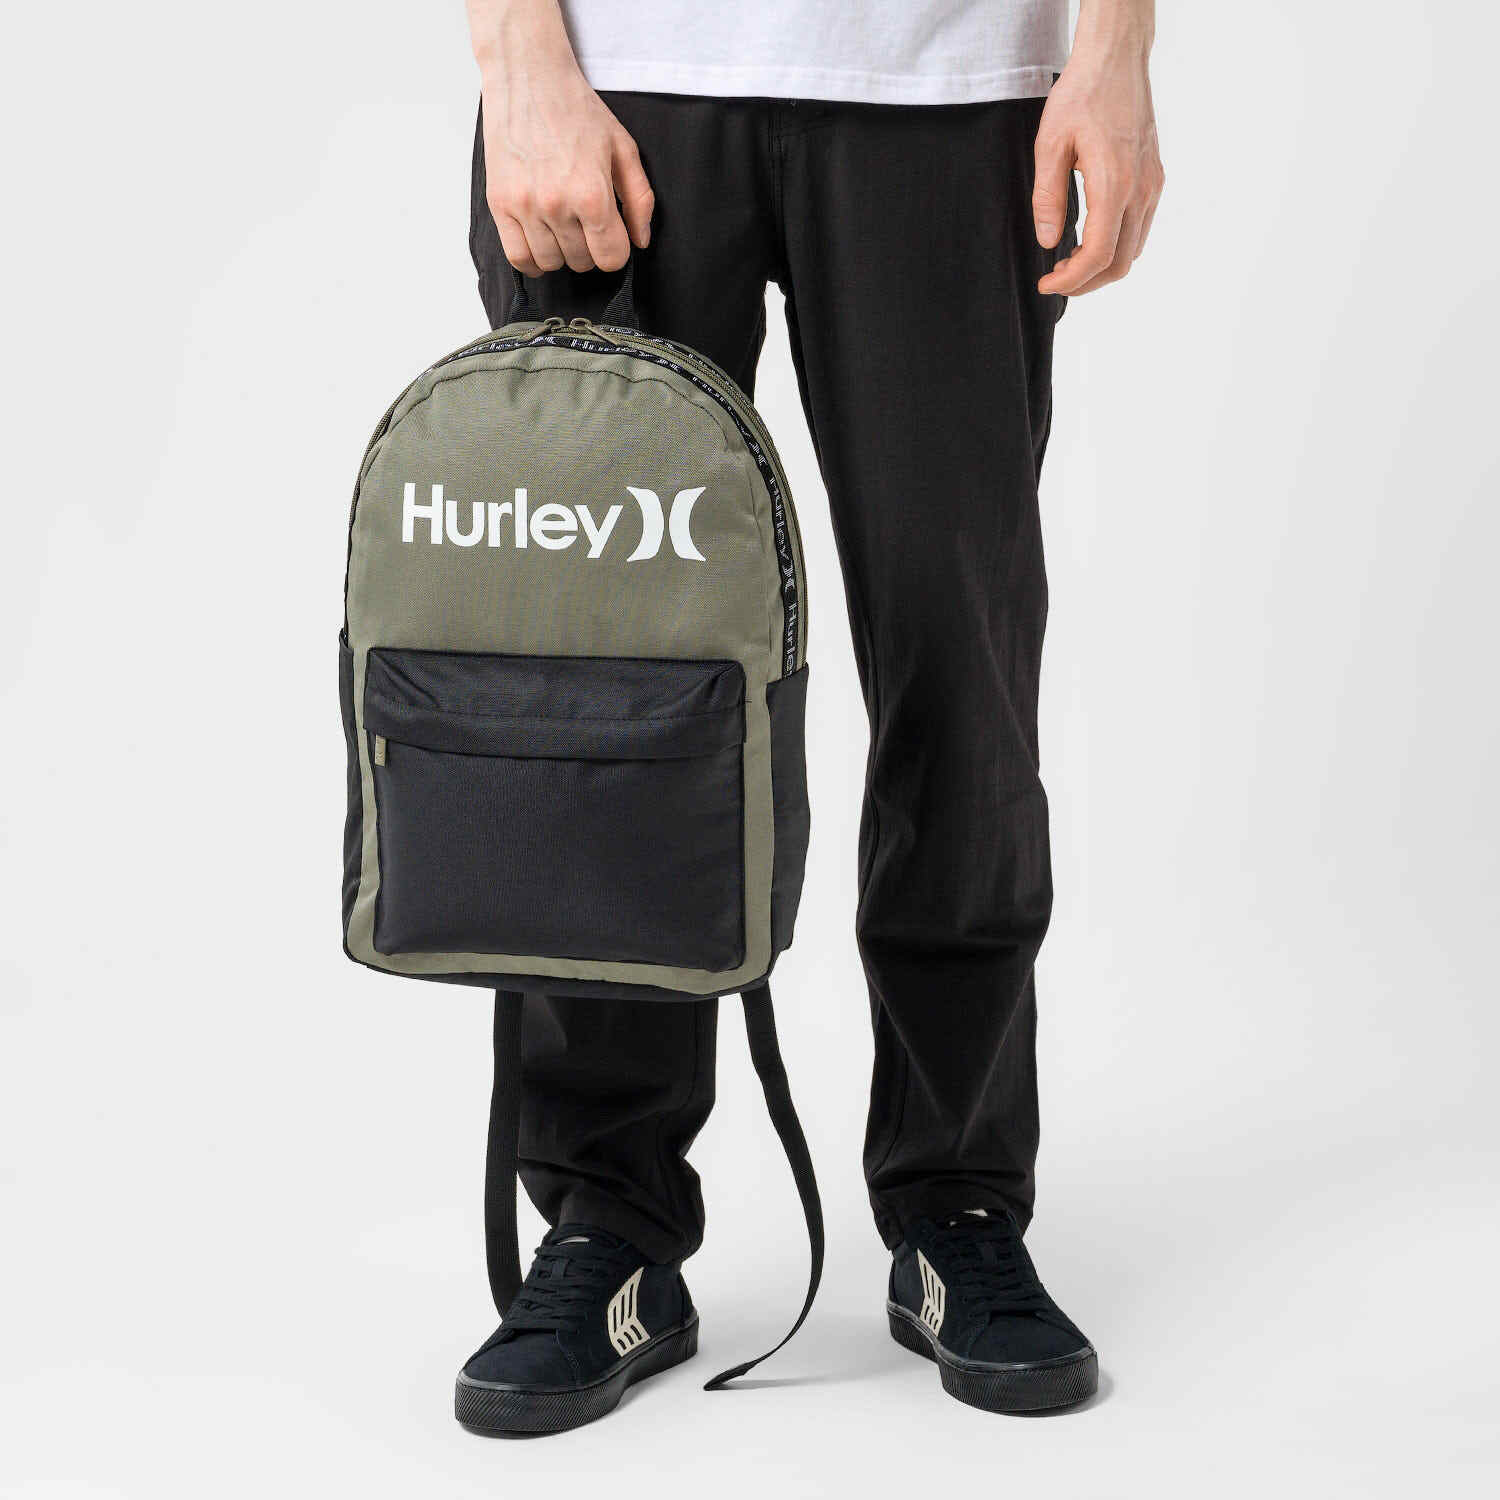 Backpack UNISEX - O&O taping